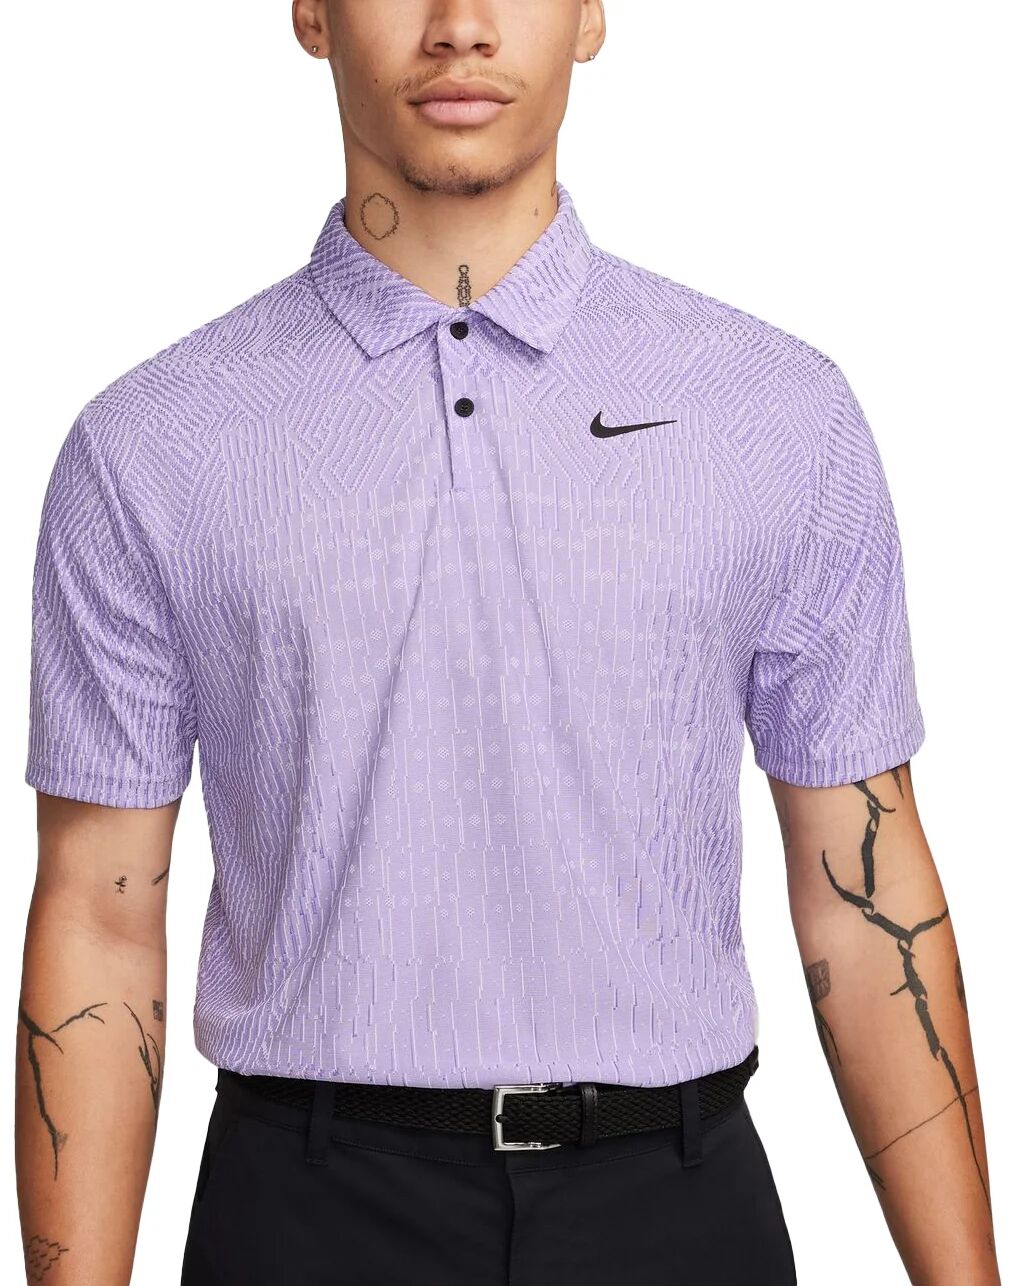 Nike Tour Dri-FIT ADV Men's Golf Polo - Purple, Size: X-Large